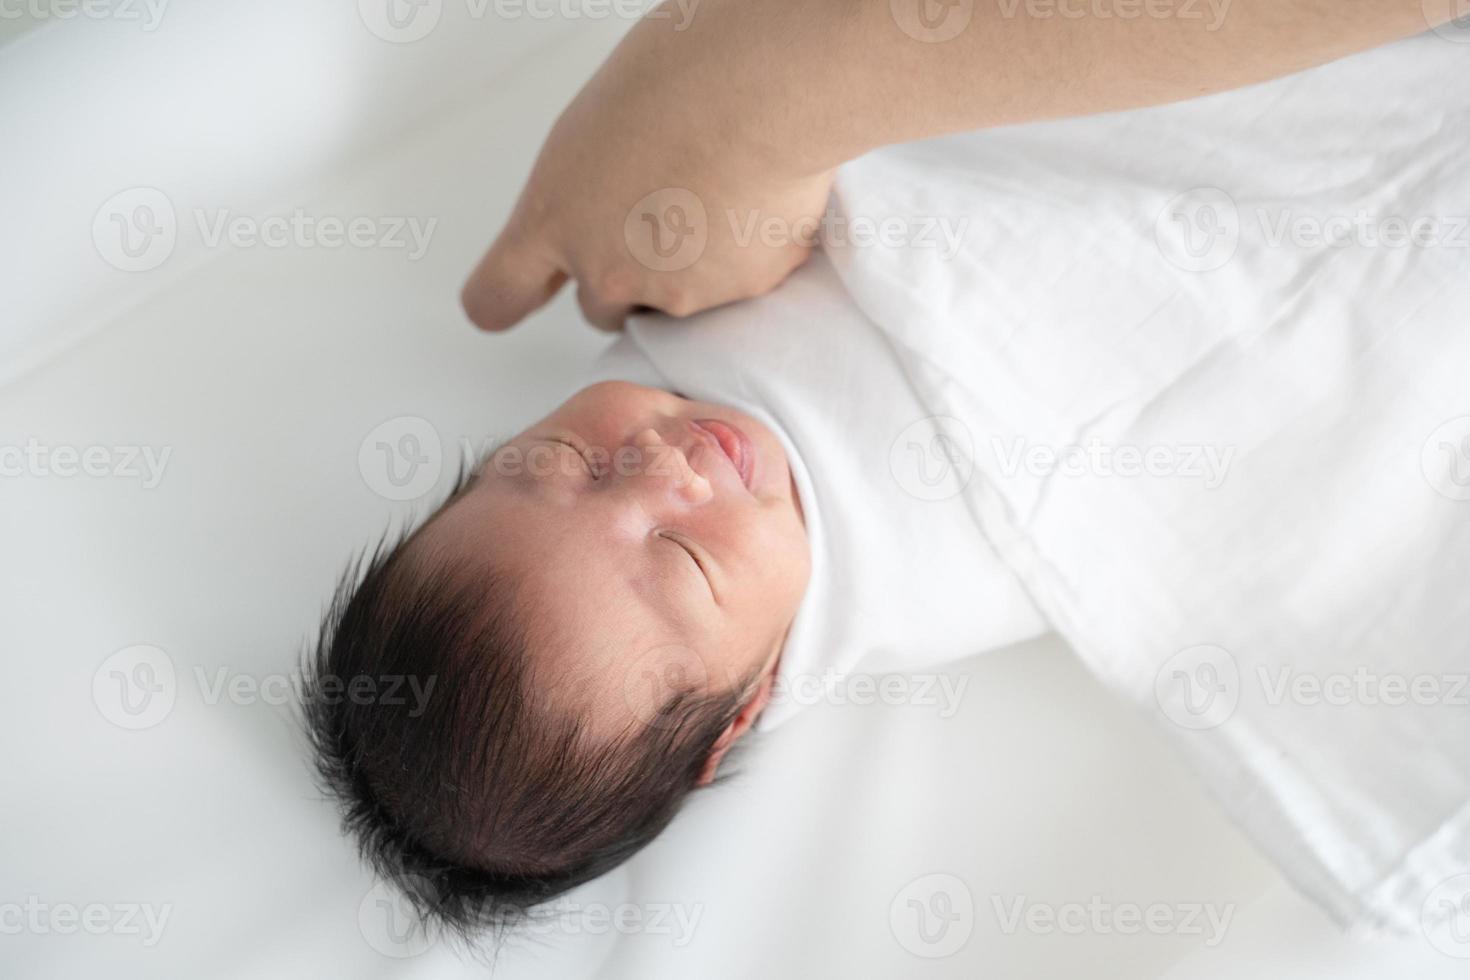 bebé recién nacido sonriendo mientras la mano de la madre envuelve su cuerpo con una manta blanca. foto